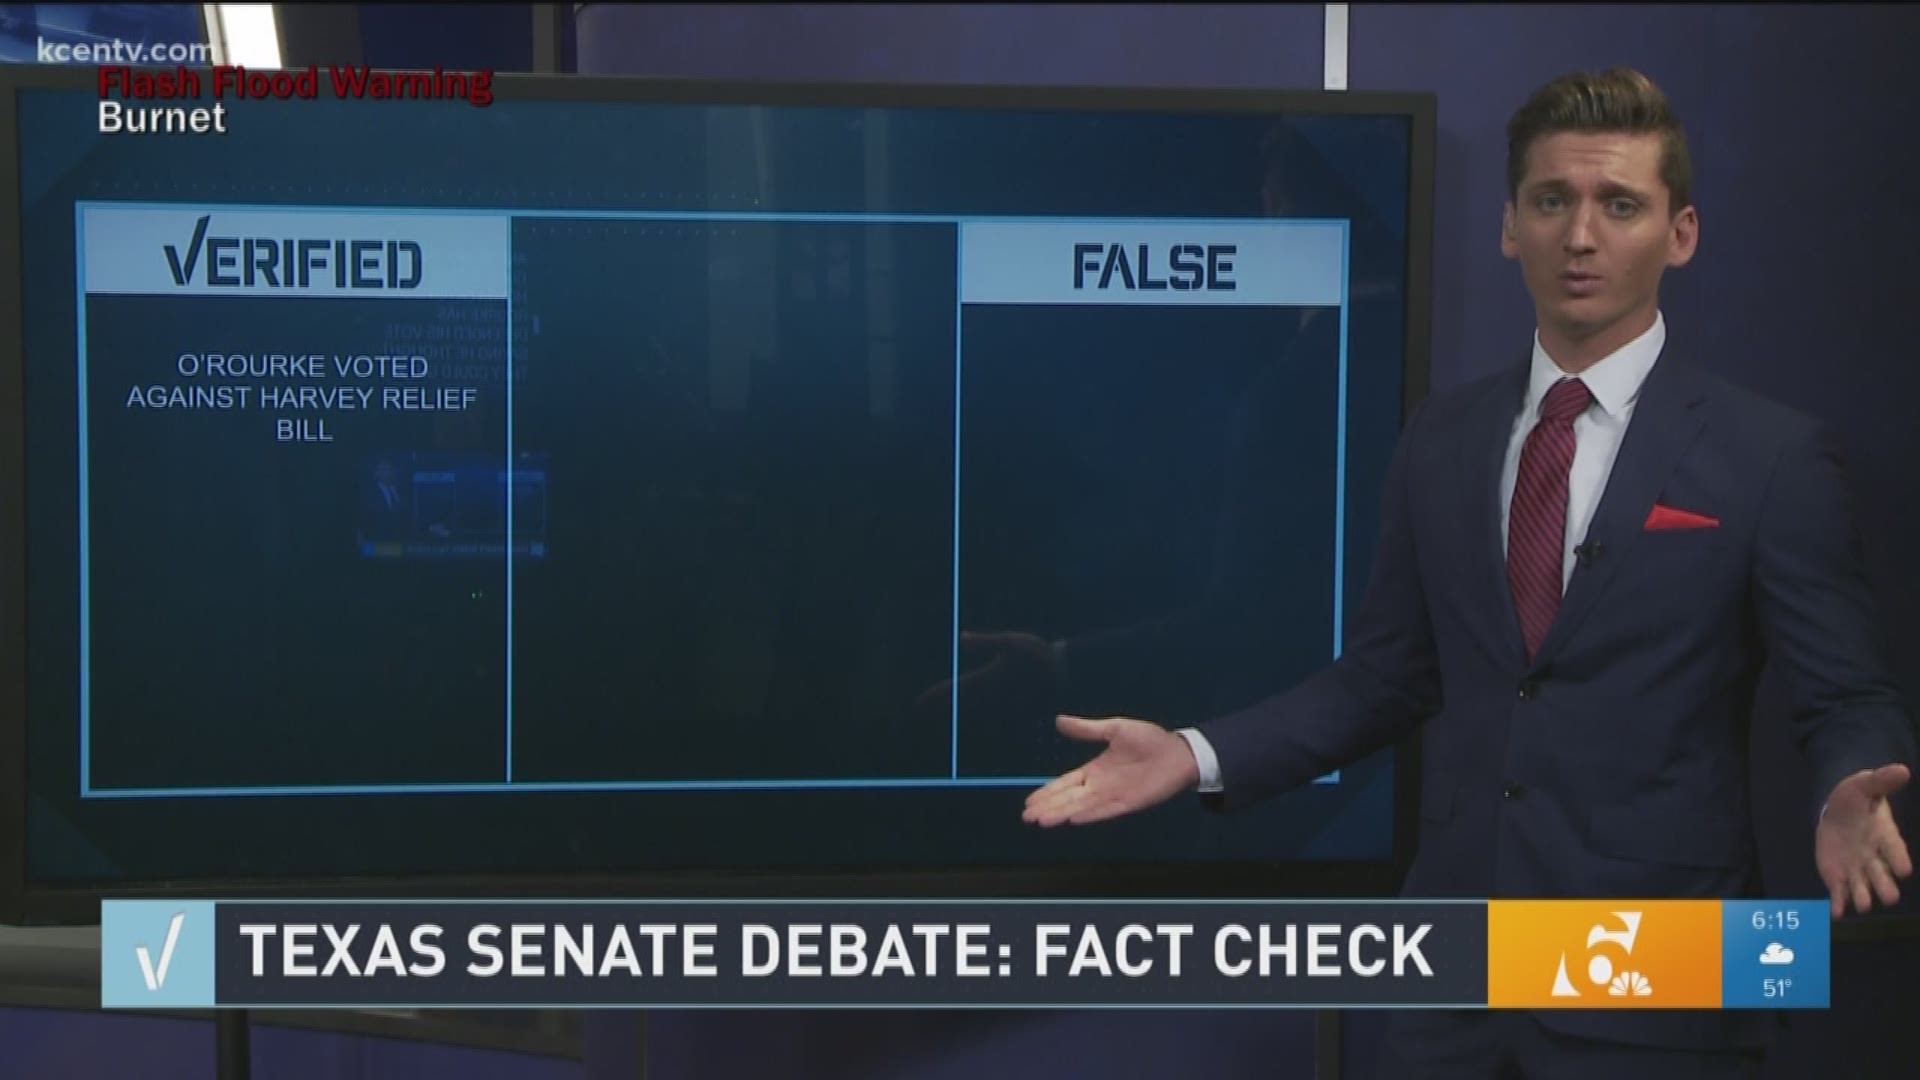 Texas Senate Debate: Fact Check